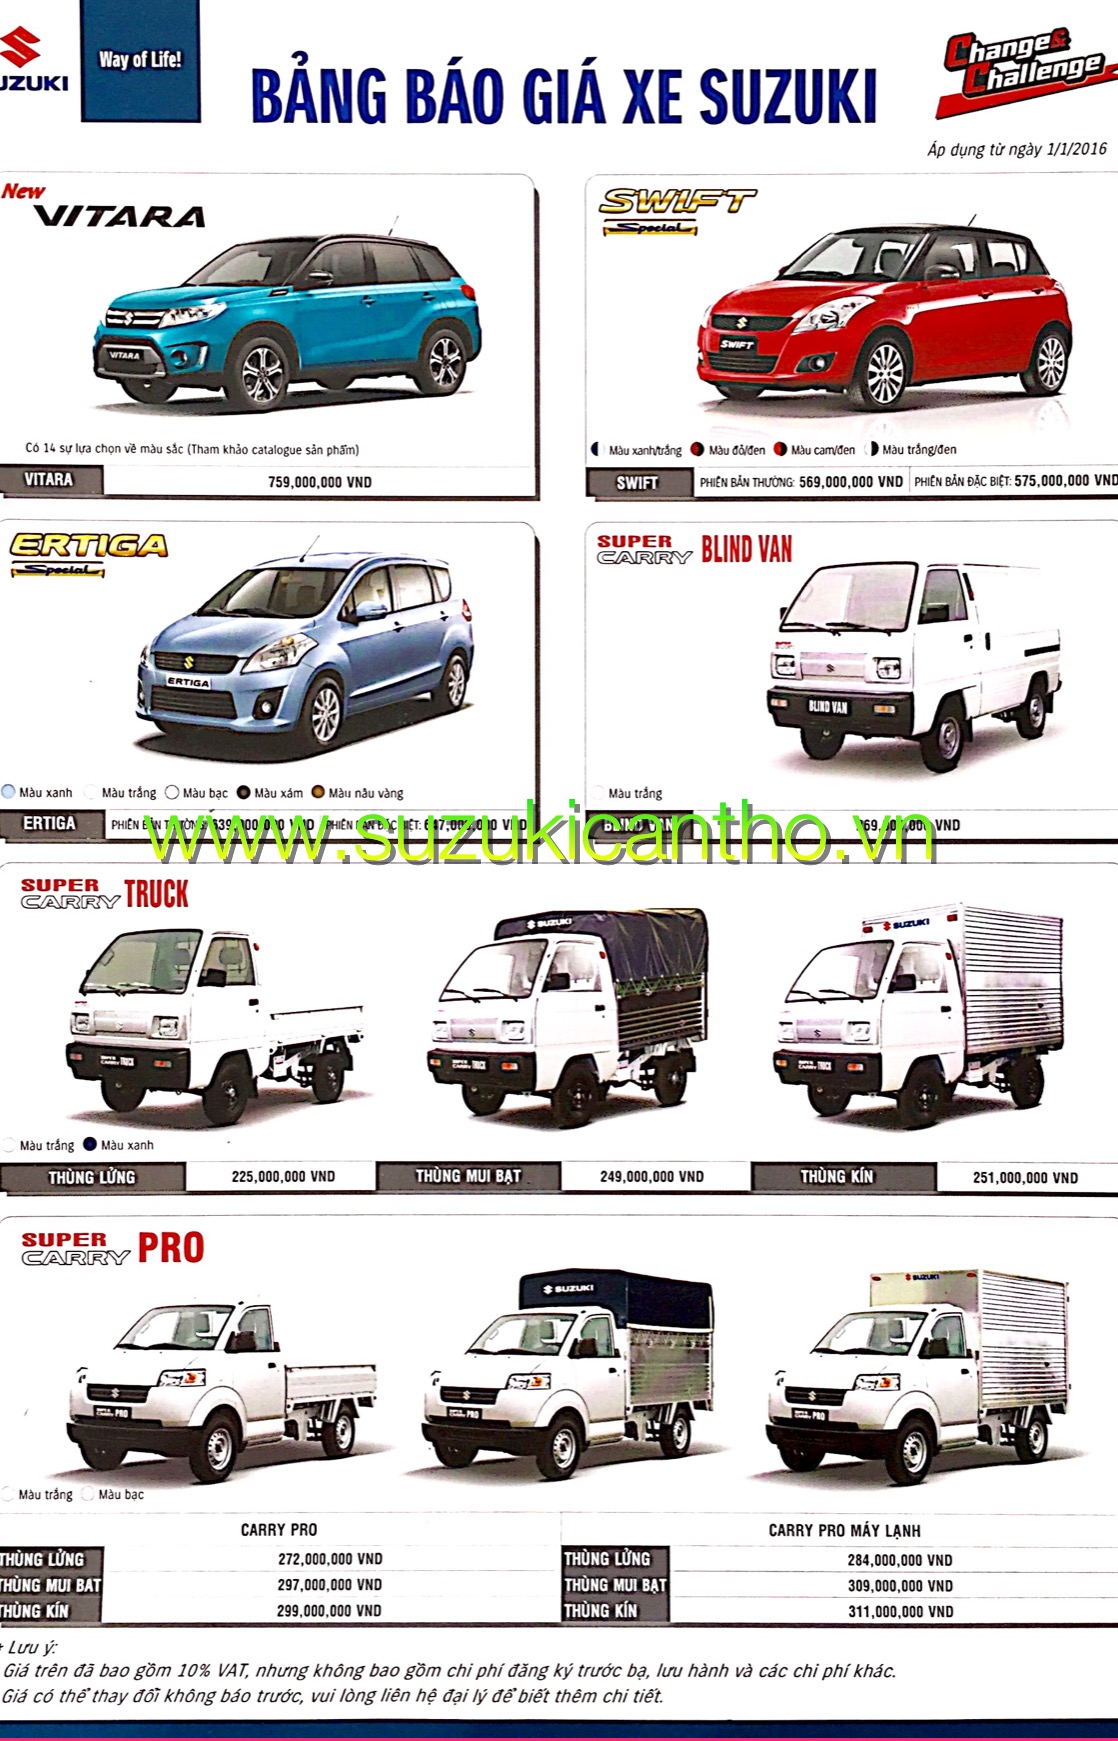 Bảng giá - Suzuki Cần Thơ | Hotline: 0941 737 679